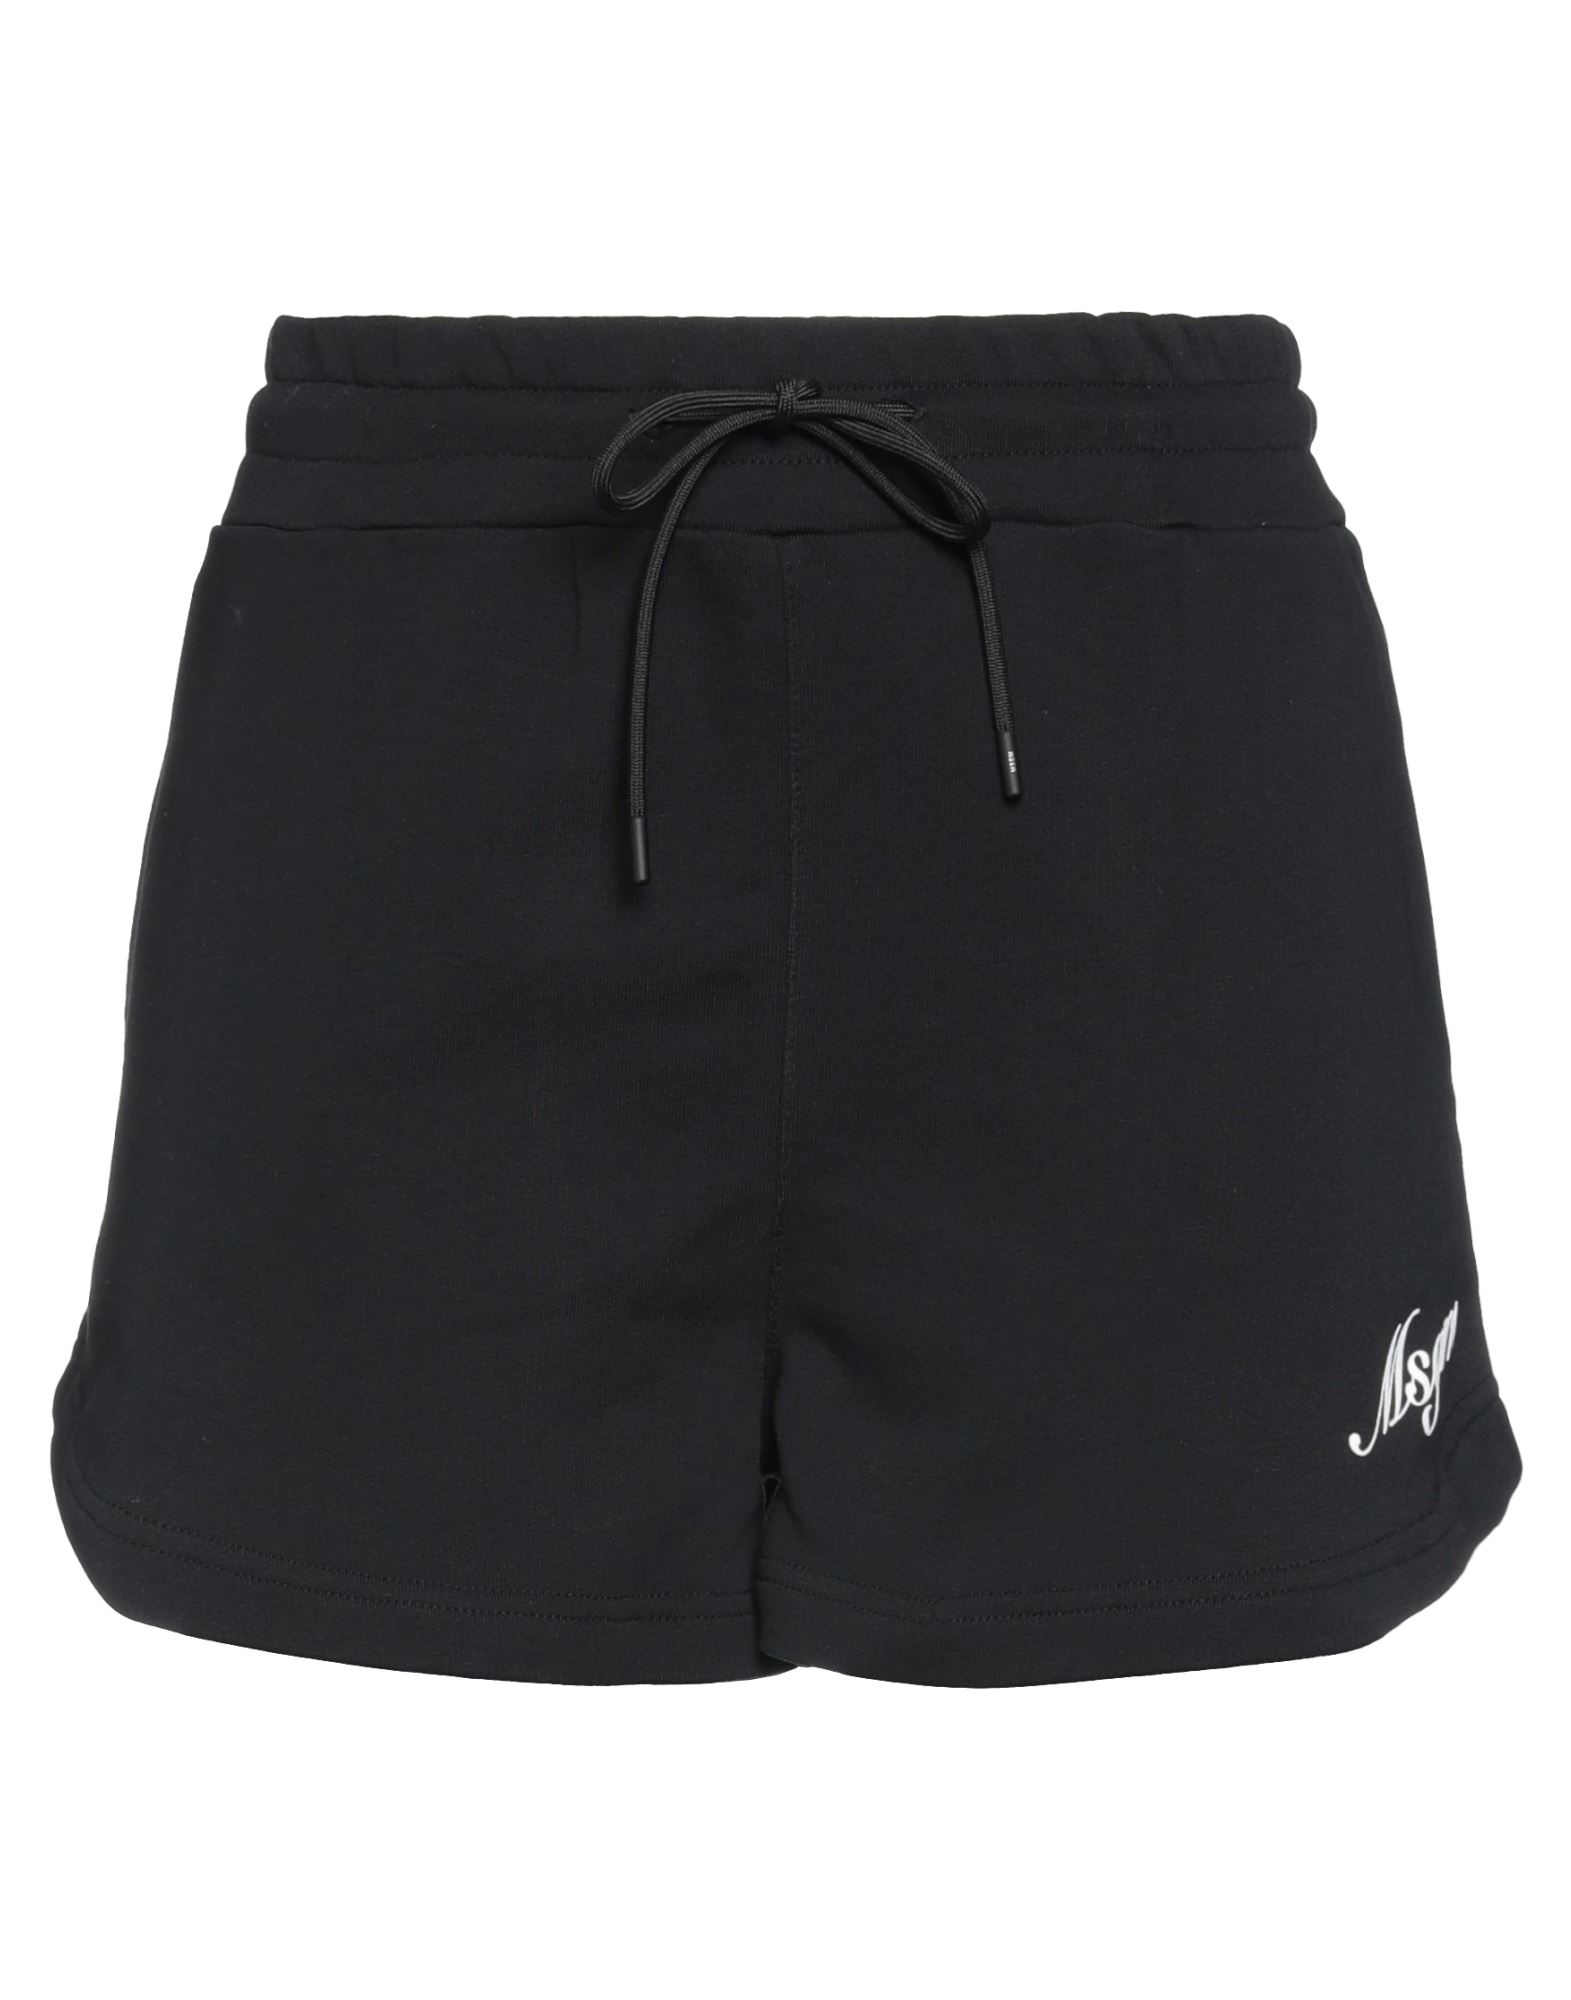 Msgm Woman Shorts & Bermuda Shorts Black Size Xxs Cotton